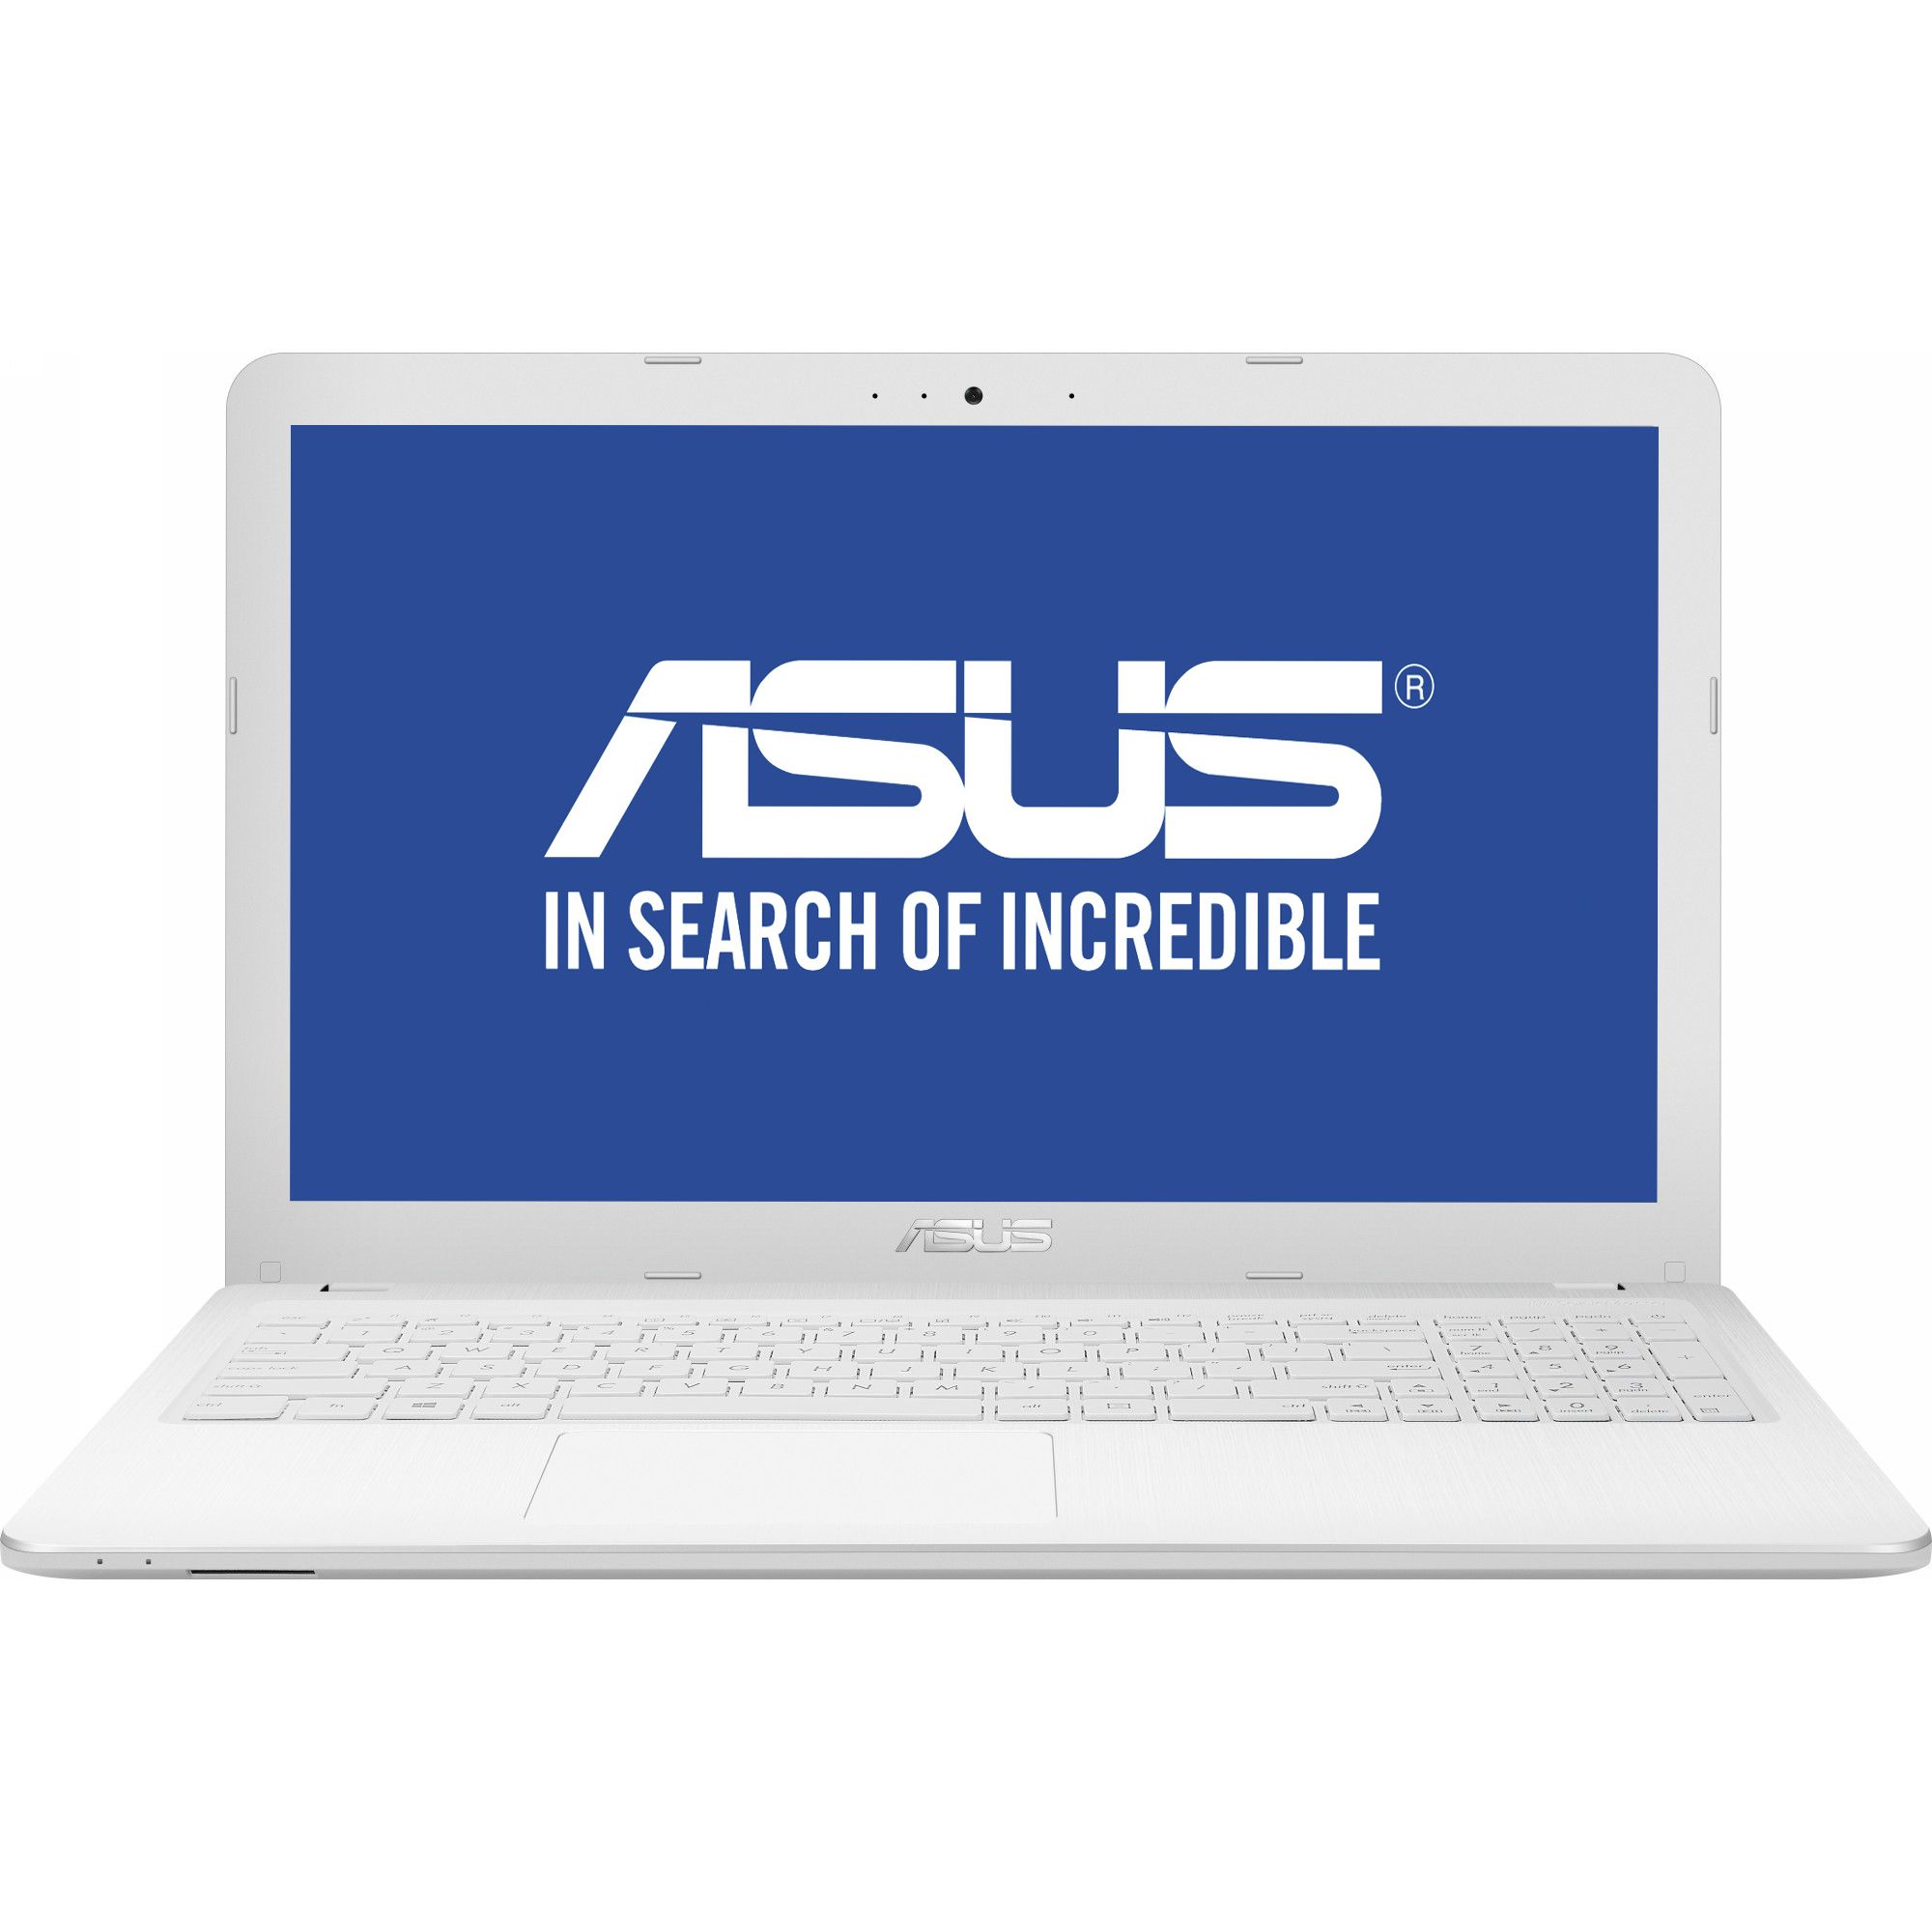  Laptop ASUS X540LJ-XX079D, Intel Core i3-4005U, 4GB DDR3, HDD 500GB, nVidia GeForce GT 920M 2GB, Free DOS 